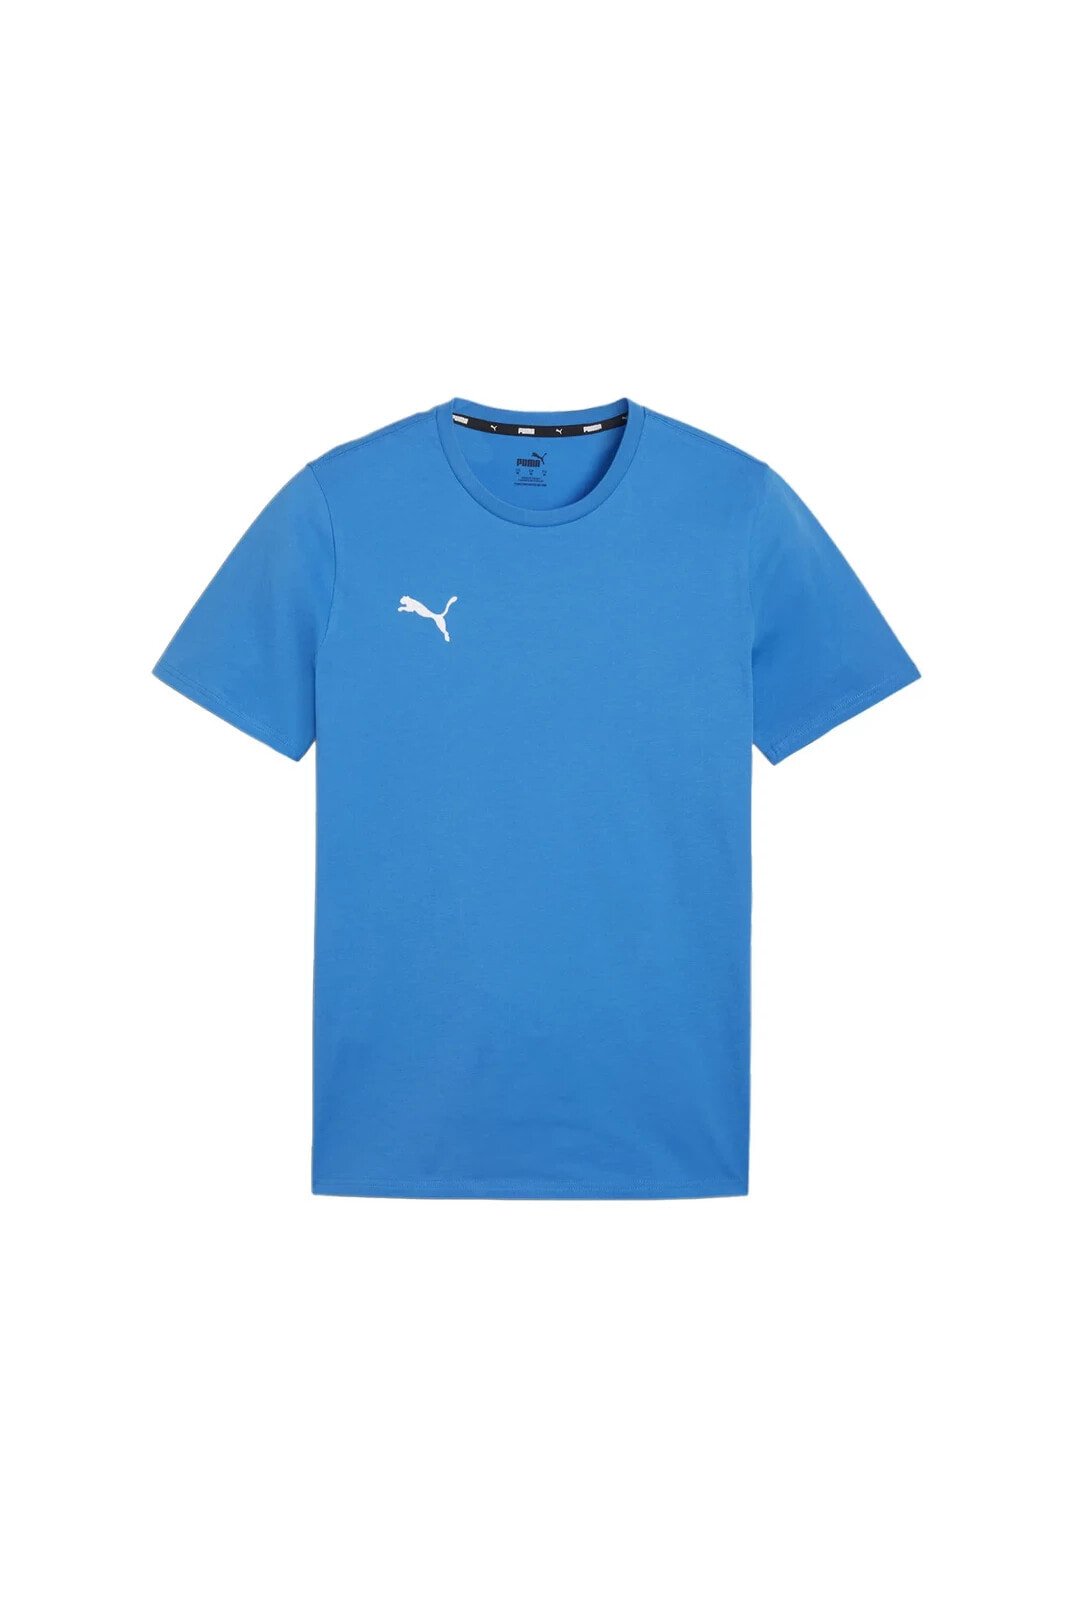 Erkek Hızlı Kuruma Atletik Günlük Kullanıma ve Spora Uygun Antrenman T-shirt Rahat Düz Tişört